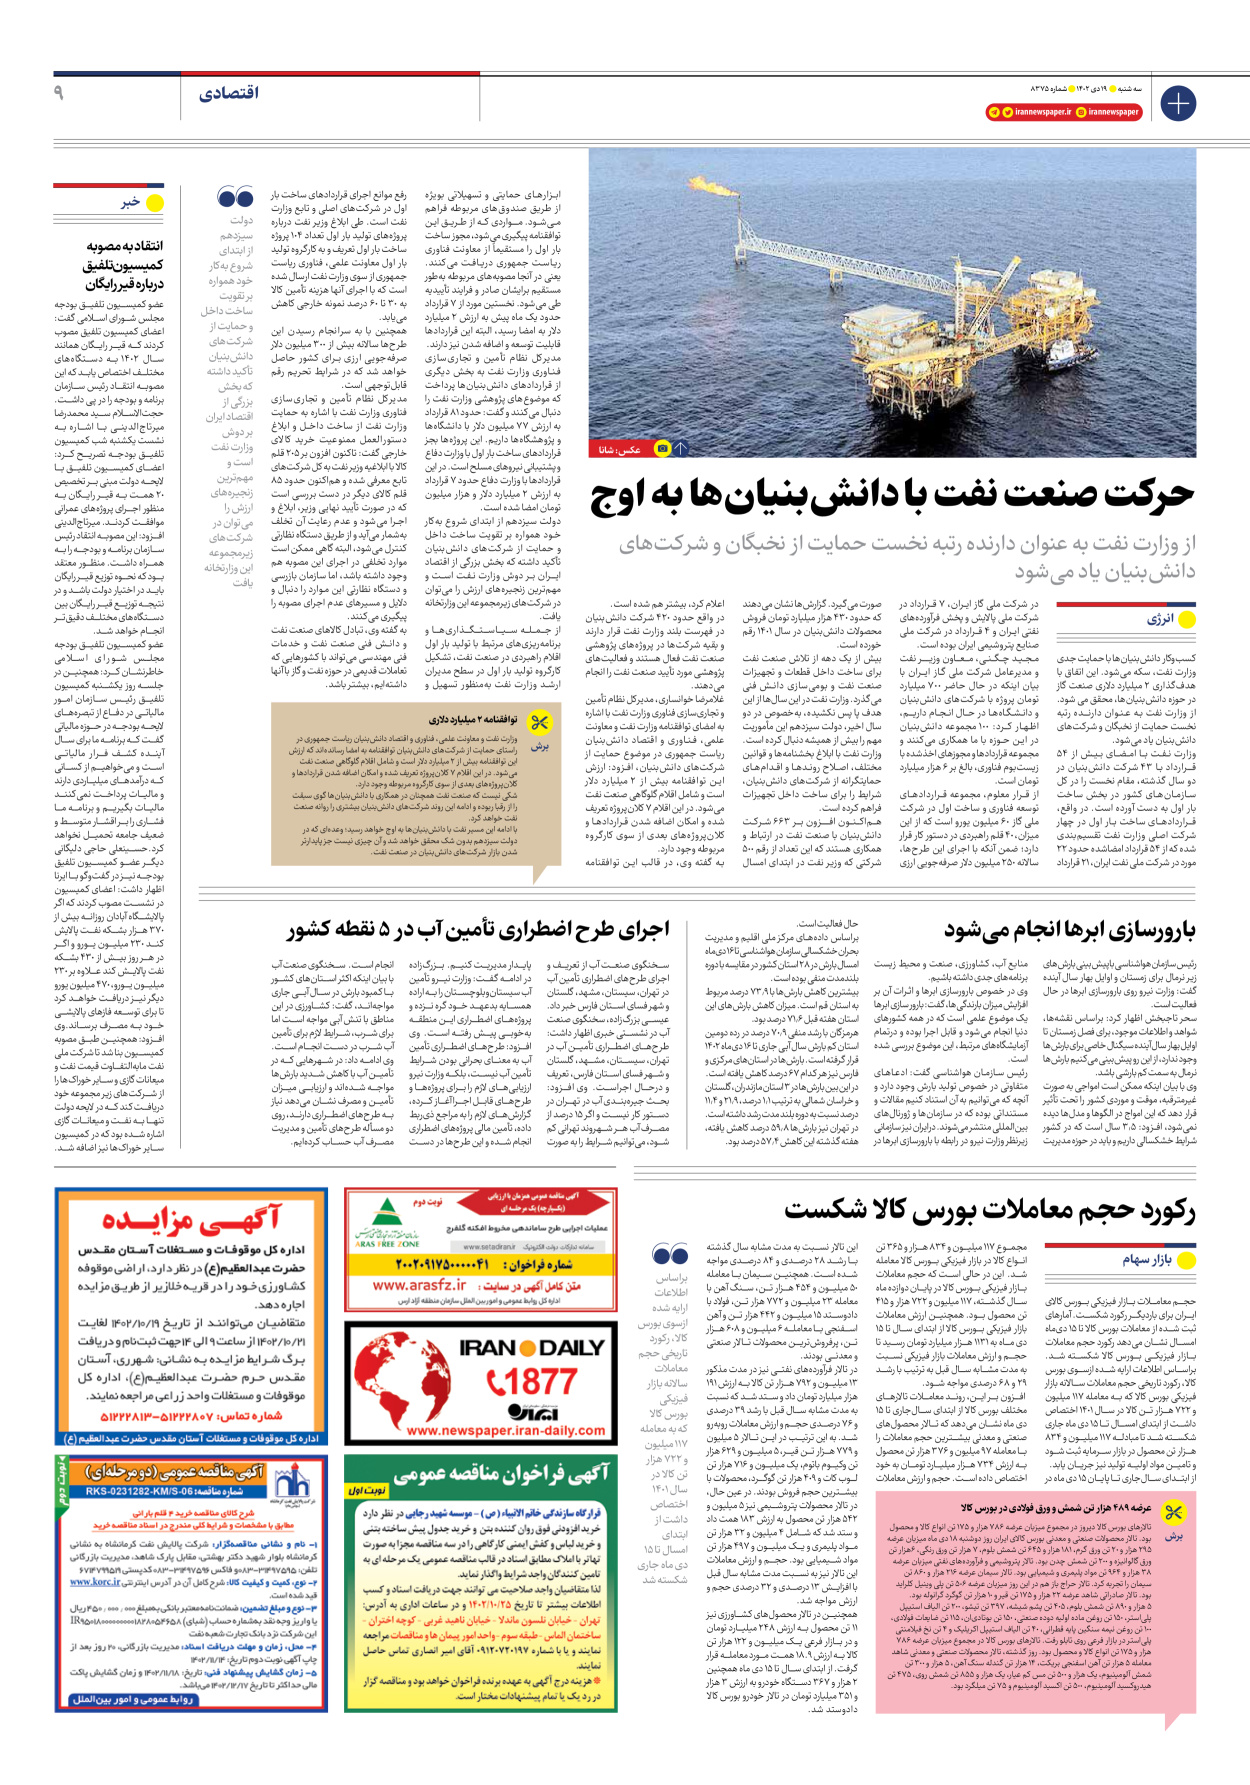 روزنامه ایران - شماره هشت هزار و سیصد و هفتاد و پنج - ۱۹ دی ۱۴۰۲ - صفحه ۹